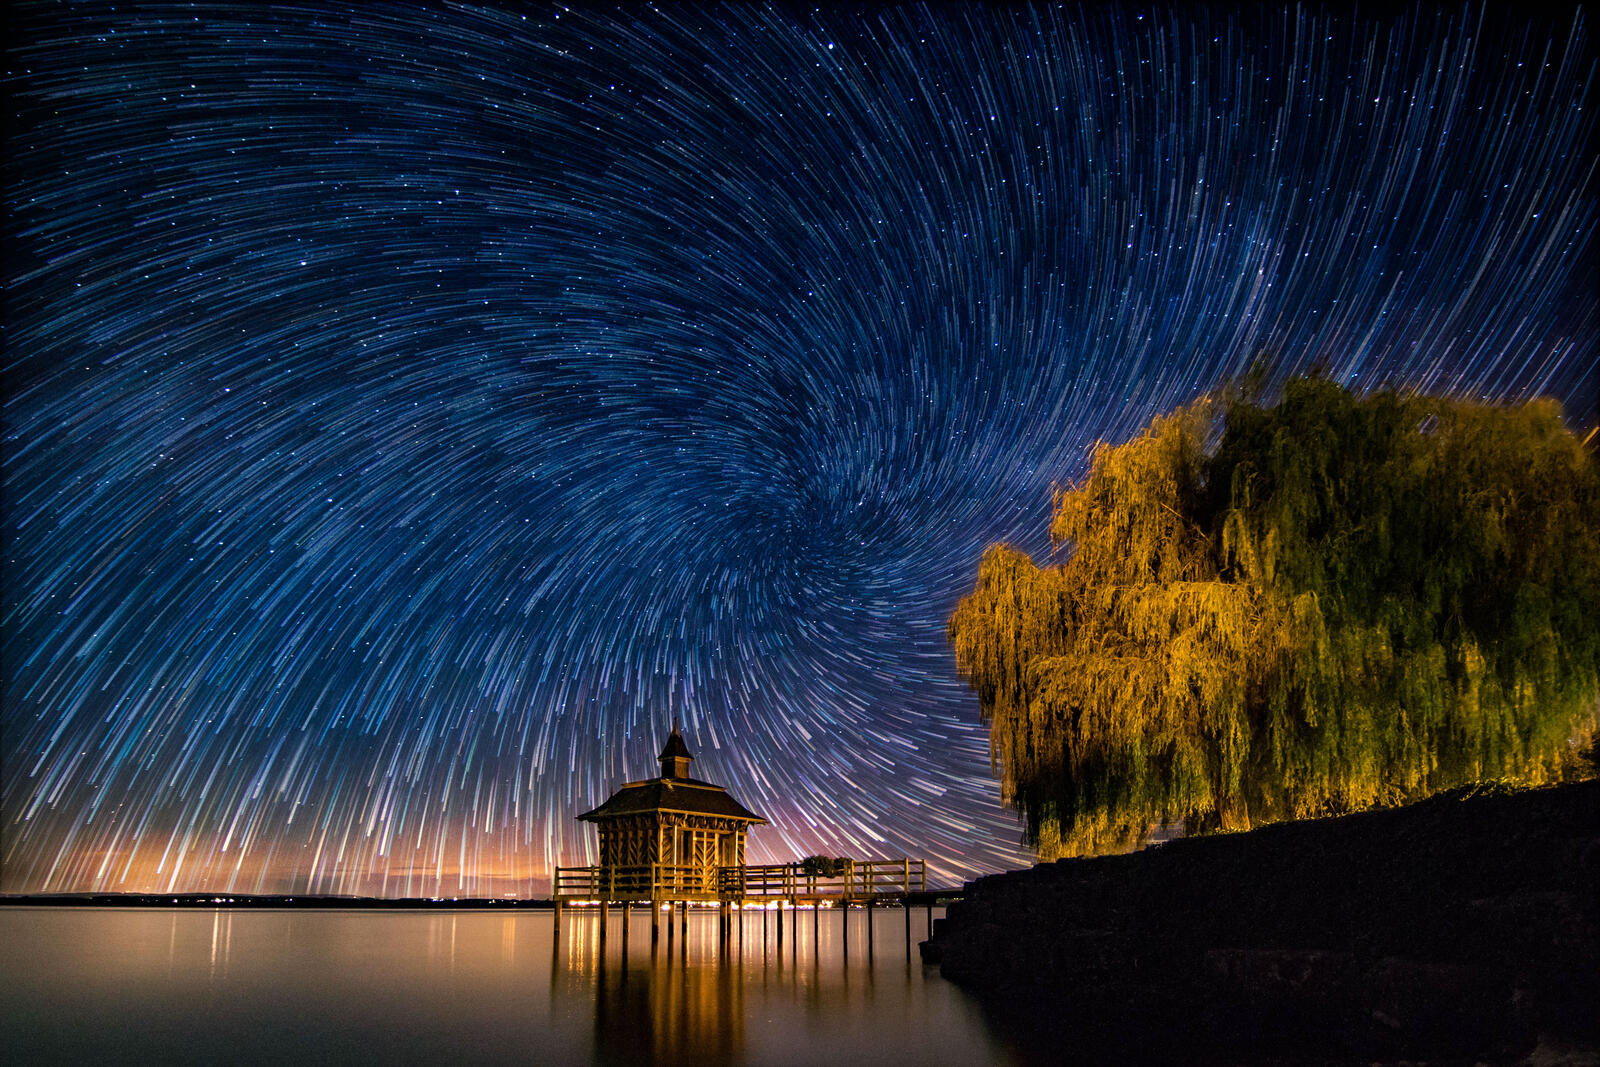 免费照片恒星漩涡 - 瑞士